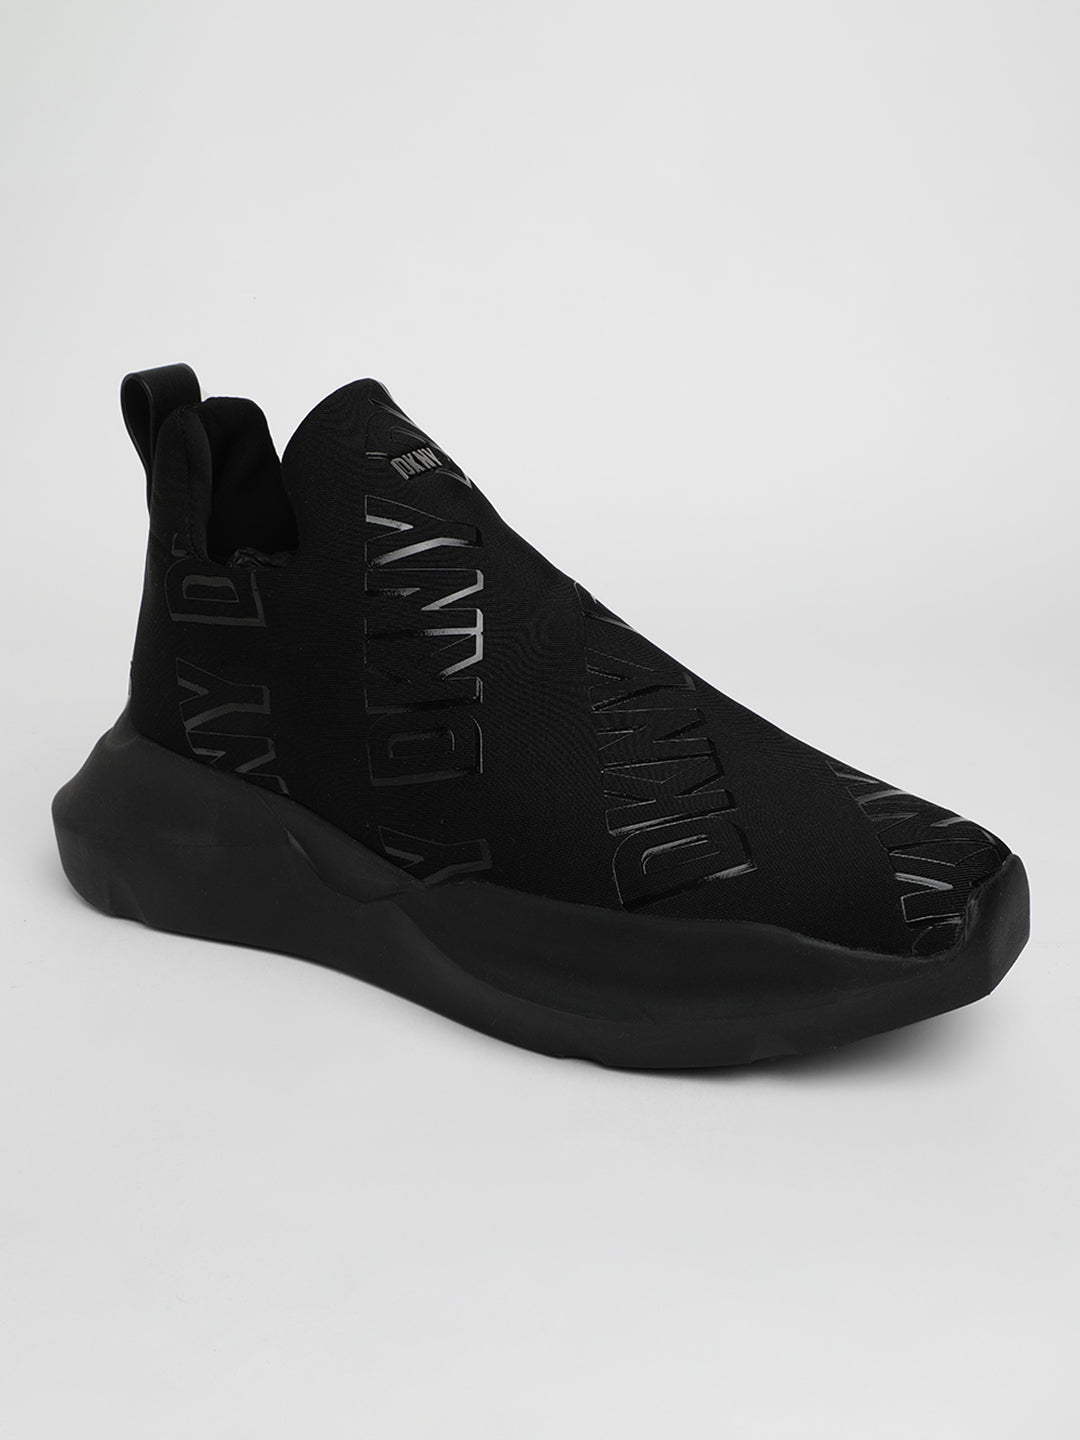 DKNY Women Black Sneakers